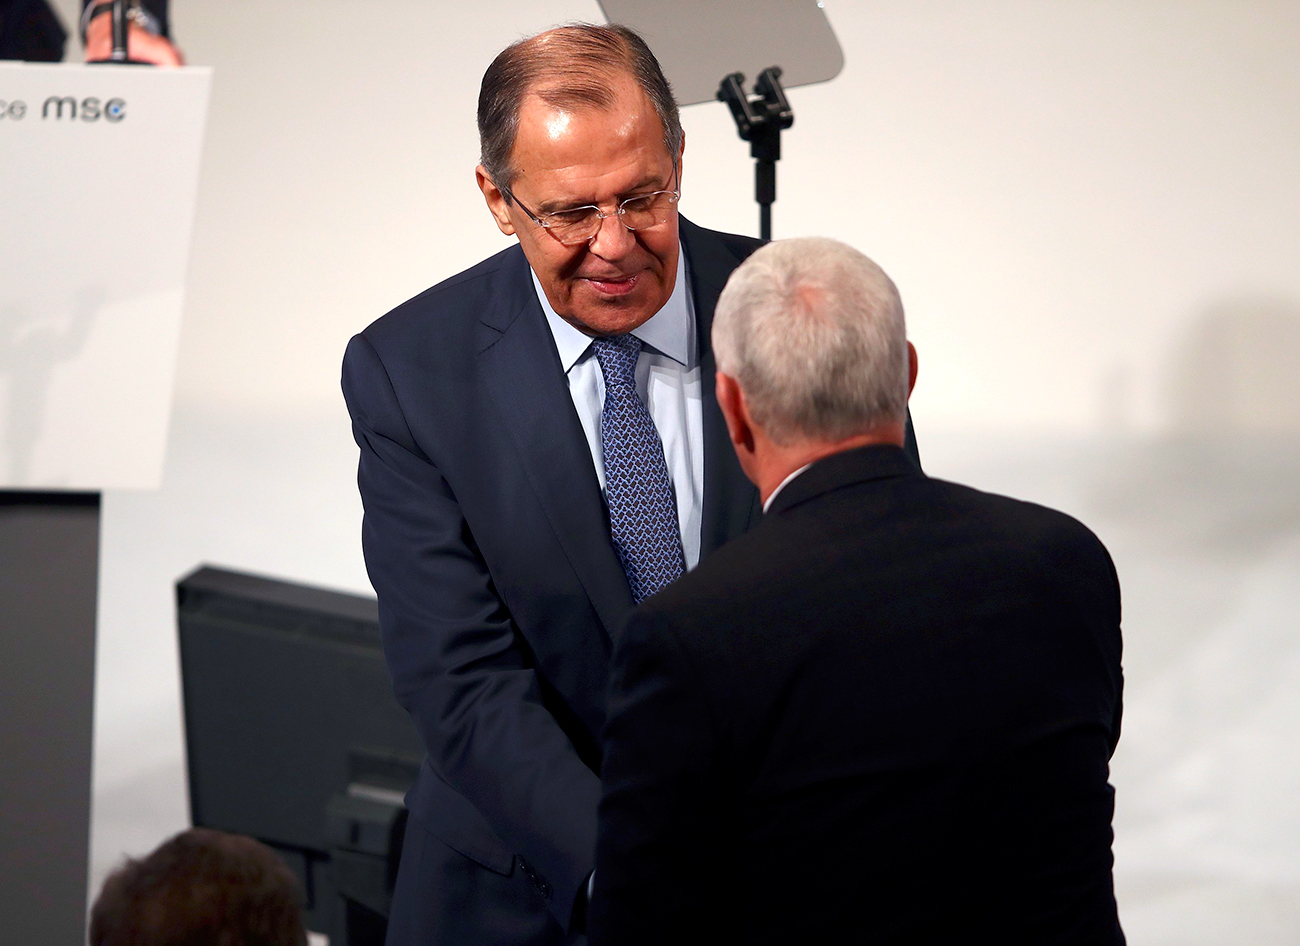 Ruski zunanji minister Sergej Lavrov in podpredsednik ZDA Mike Pence se rokujeta na 53. Münchenski varnostni konferenci, 18. februar 2017. 